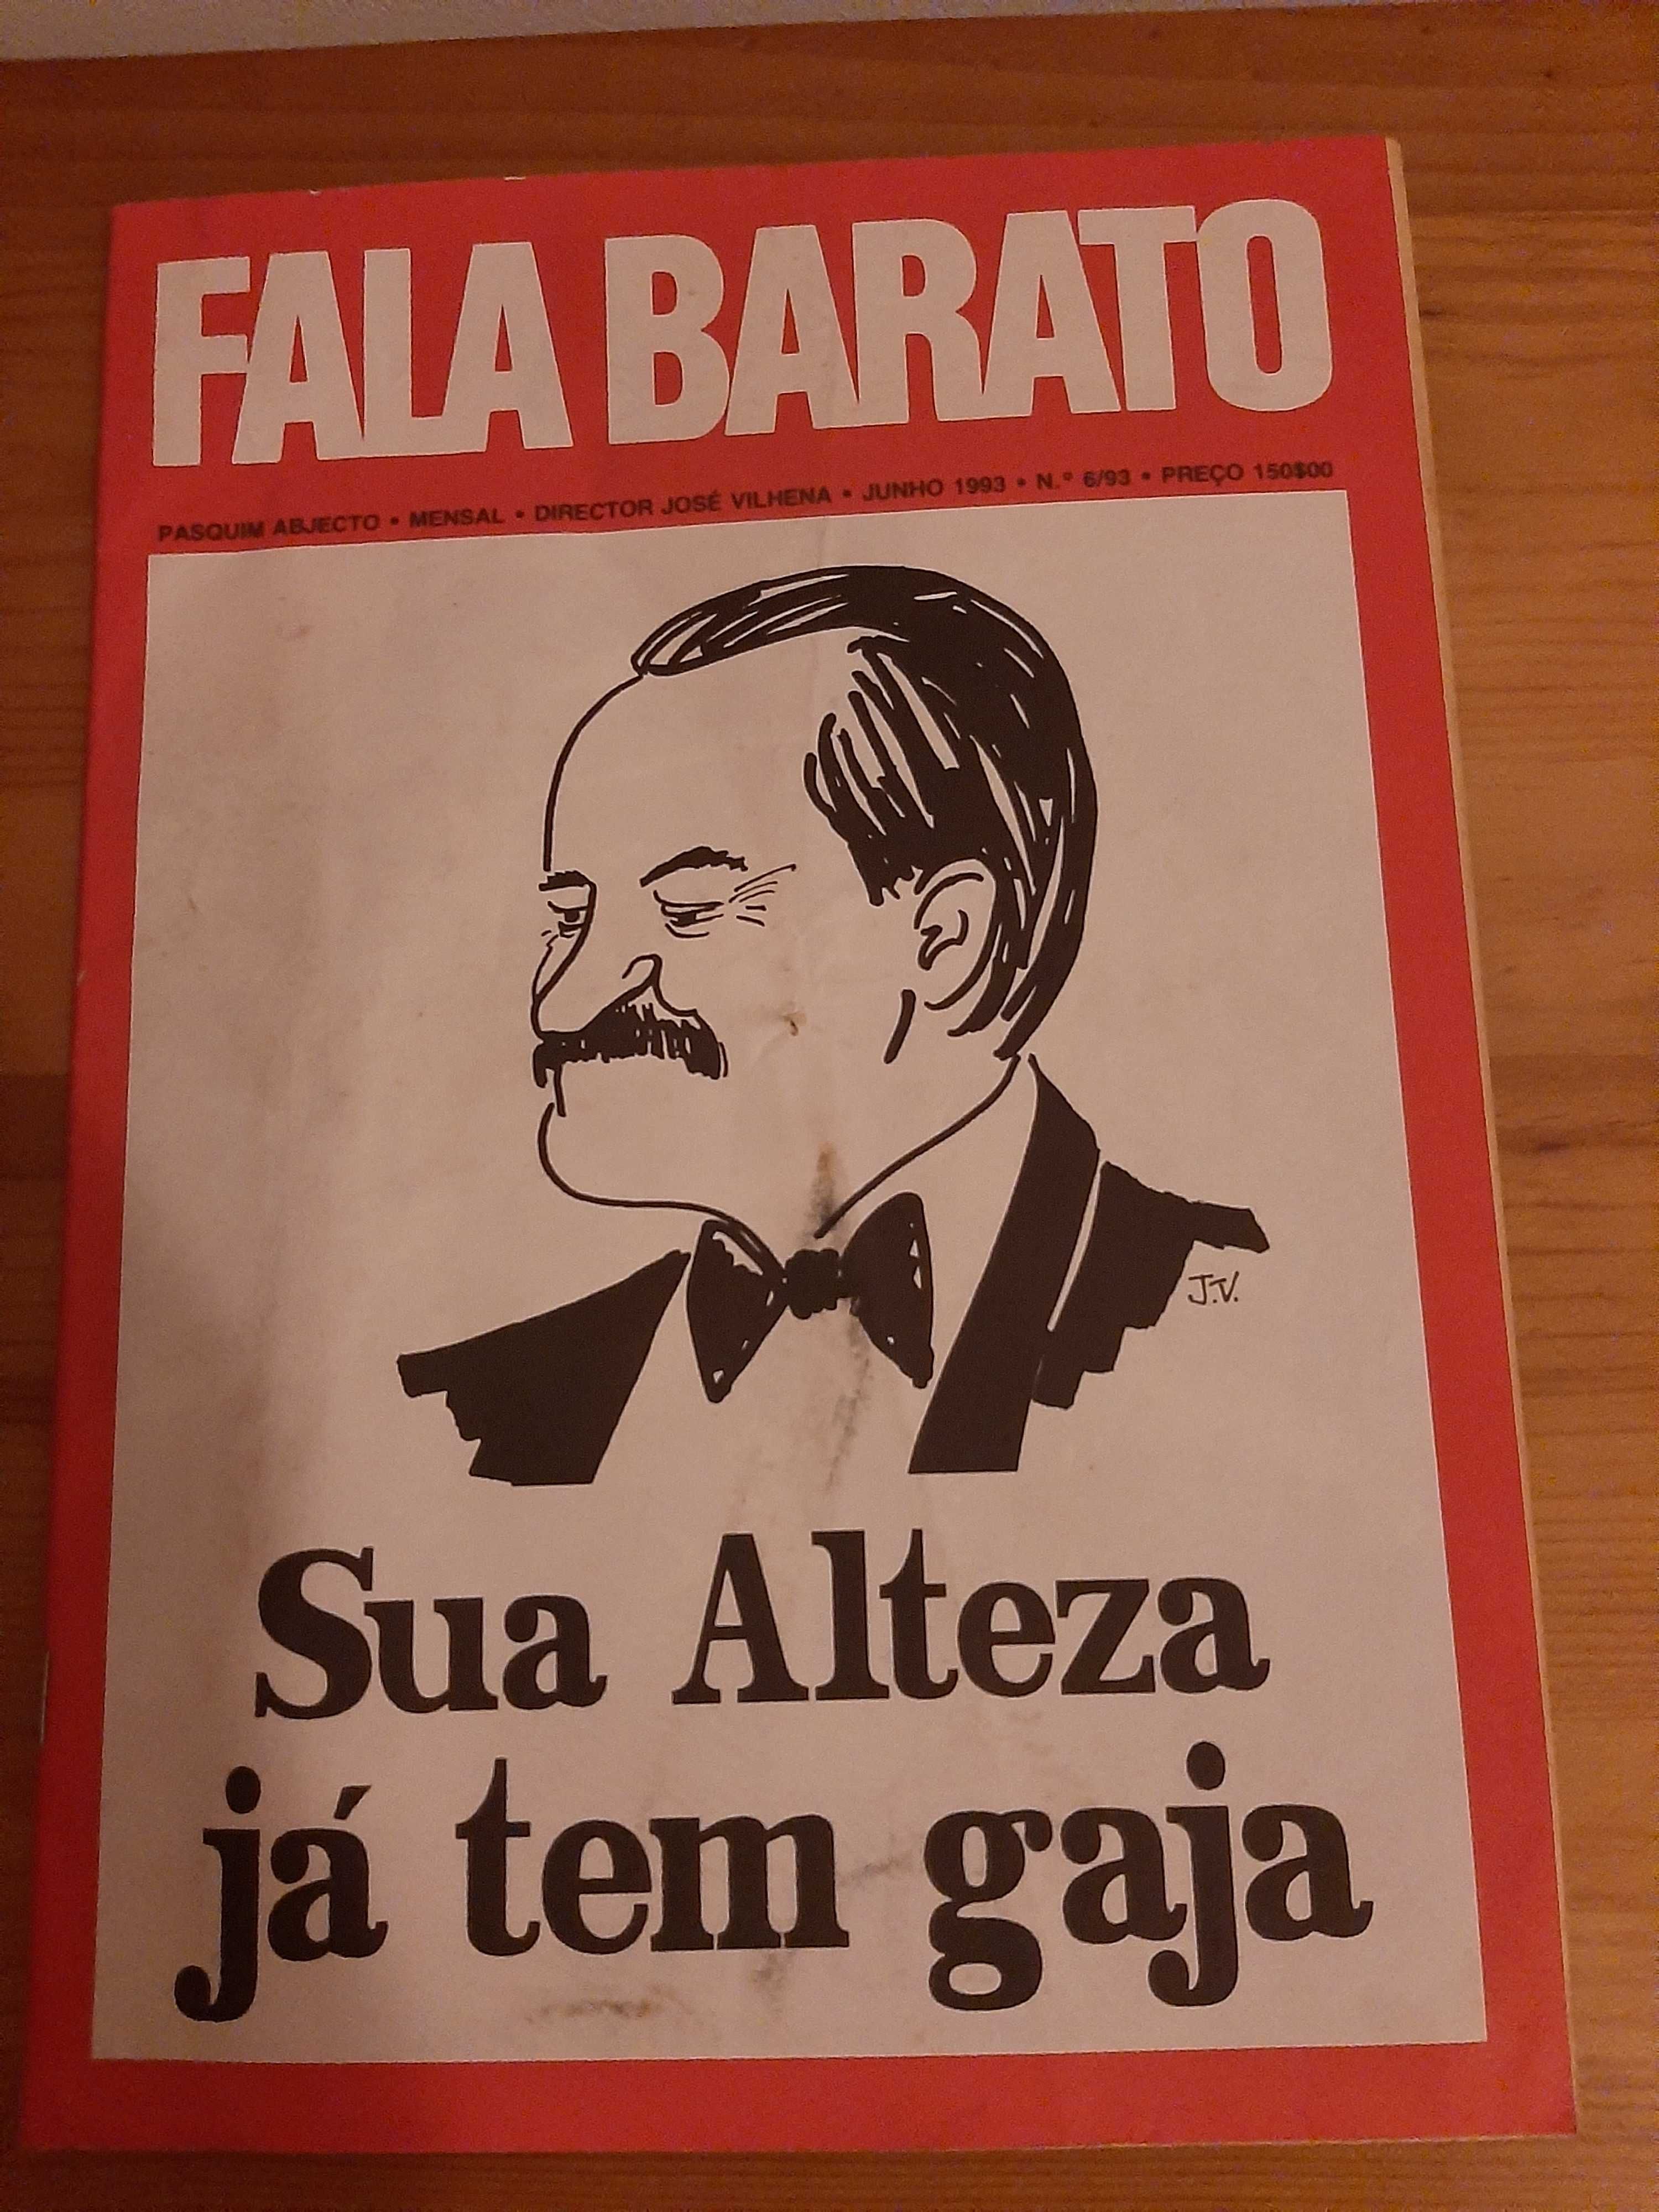 Revista Fala Barato, revista satírica.